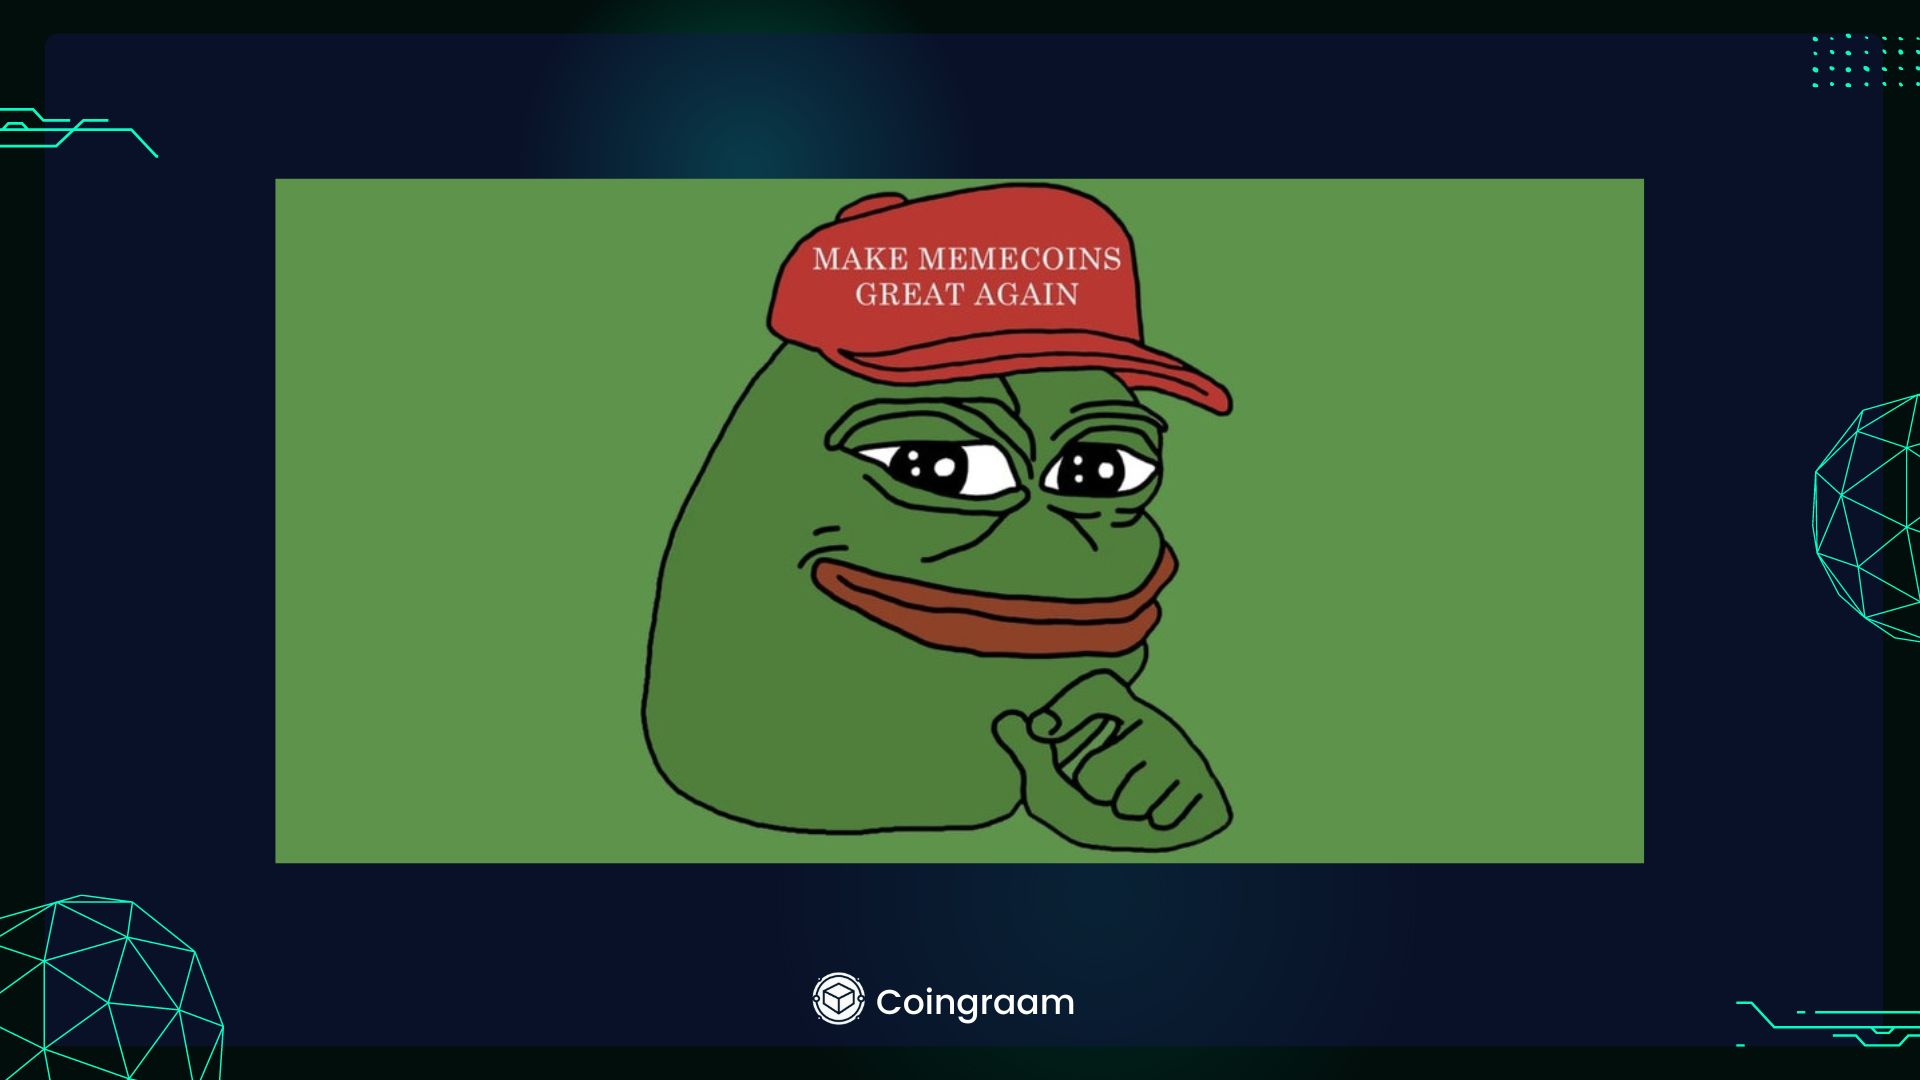  صرافی Coinbase در اقدامی عجیب Pepe را «نماد نفرت» نامید

